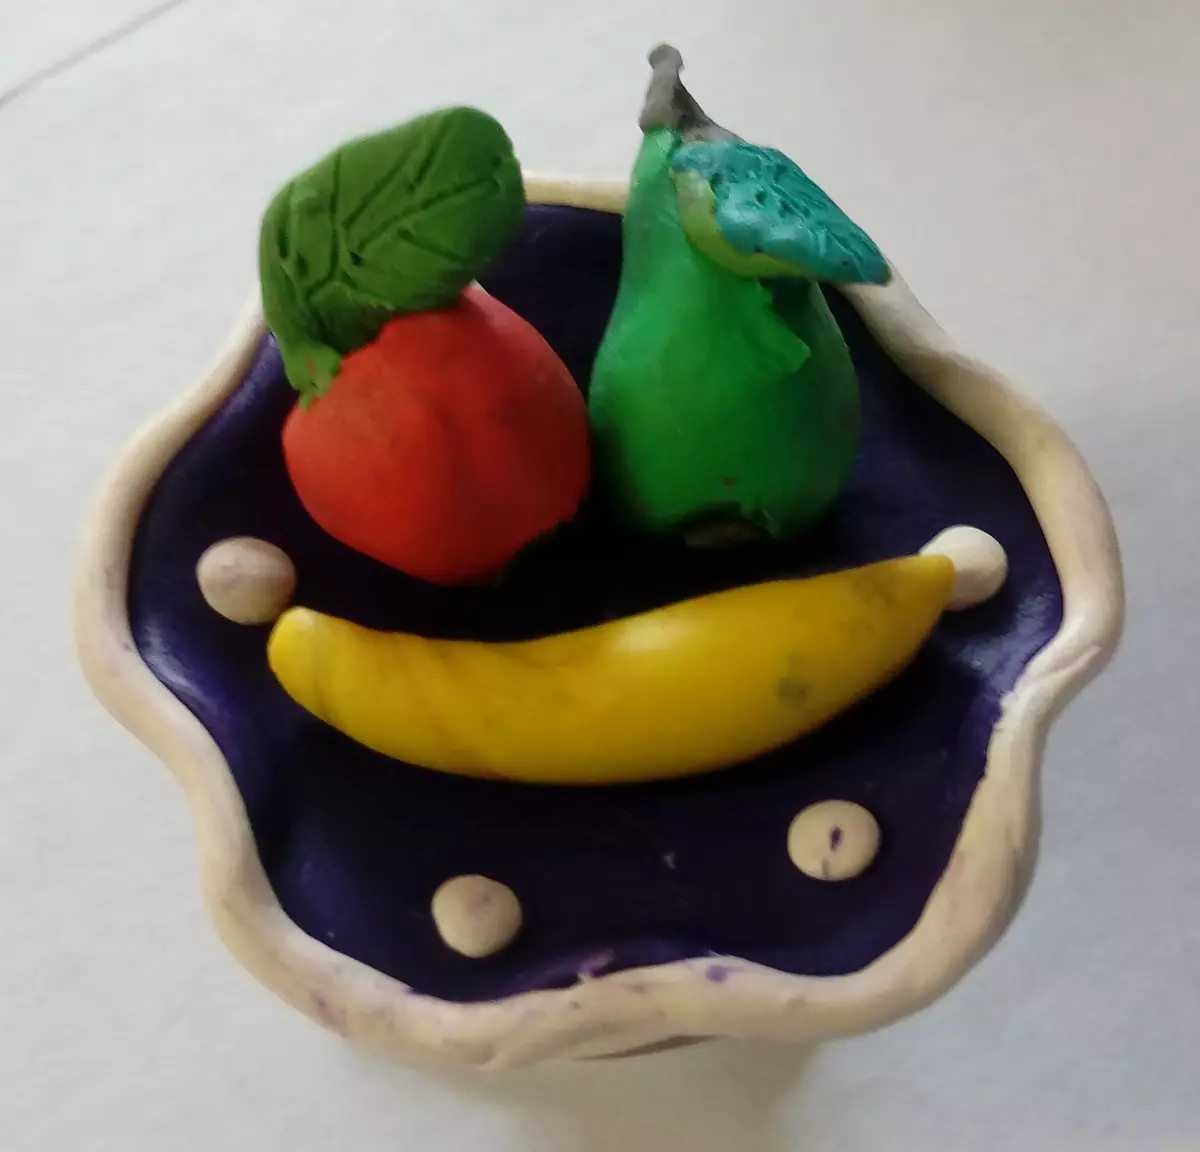 Fruits de pâte à modeler (43 photos): panier de modélisation des fruits pour enfants. Comment sculpter un vase avec des fruits de la pâte à modeler légère? Que pouvez-vous faire d'autre? 27243_23